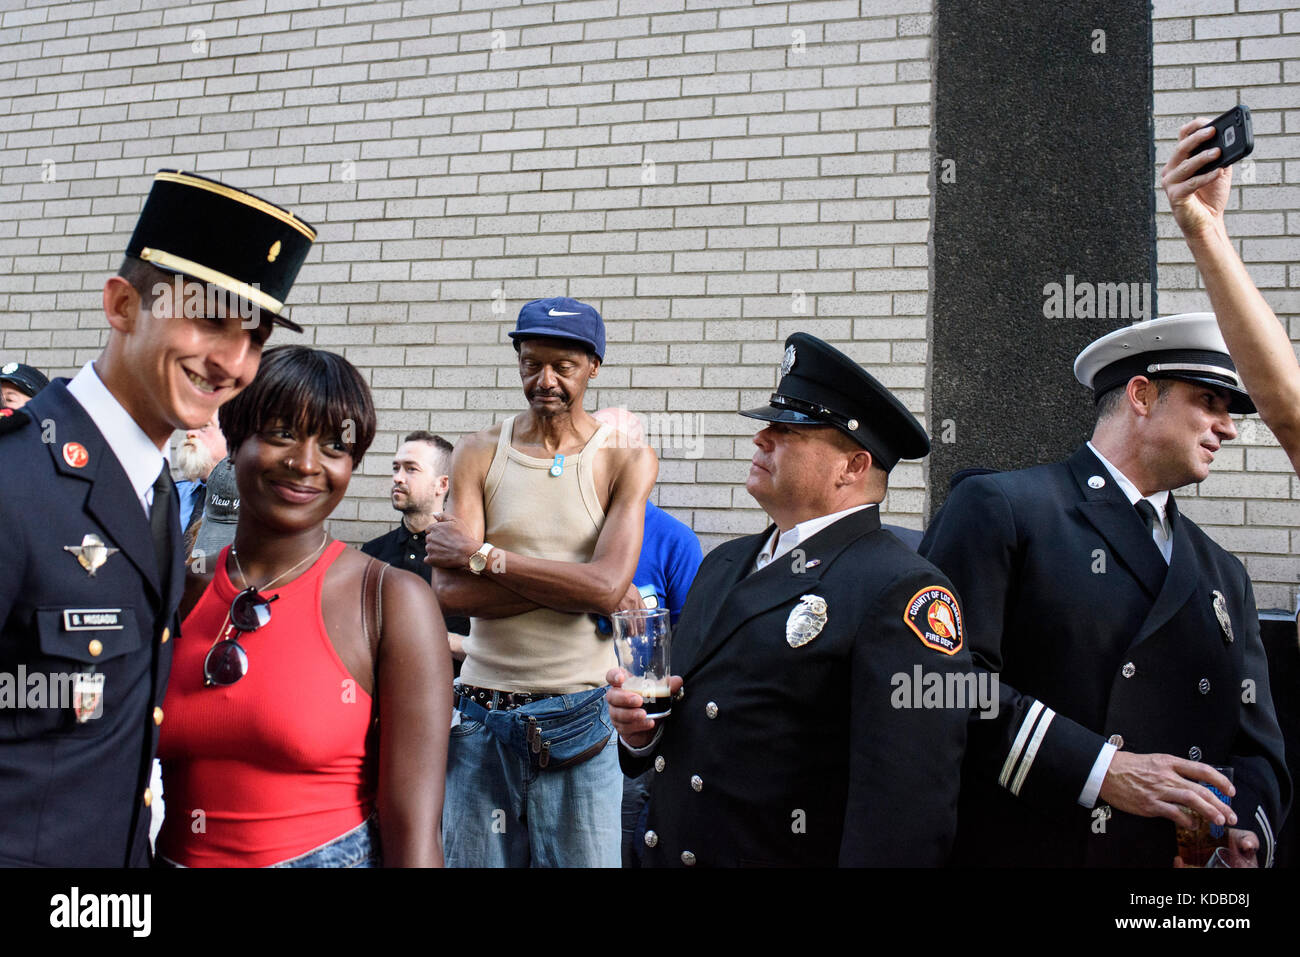 Les pompiers New-yorkais fêtent à leur façon le 15ème anniversaire du 9-11, un pompier Français se fait photographier avec des New-yorkais, ambiance c Stock Photo